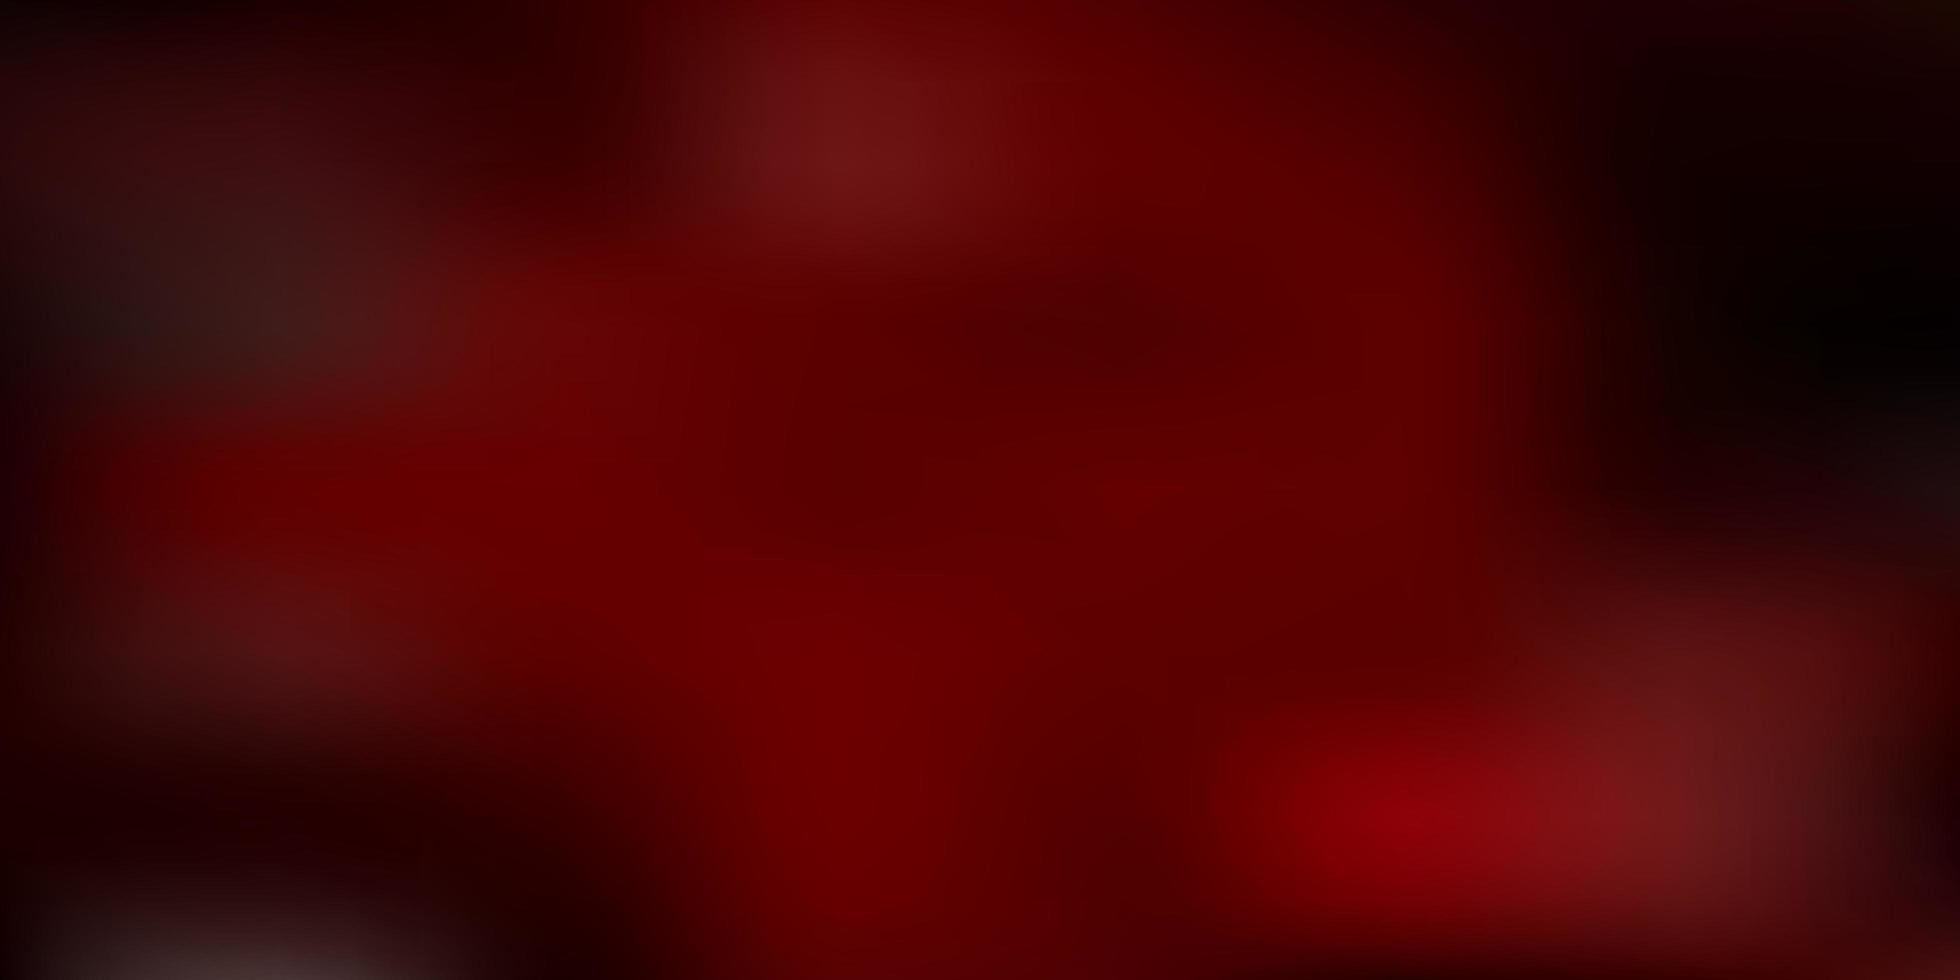 Dark red vector blur layout